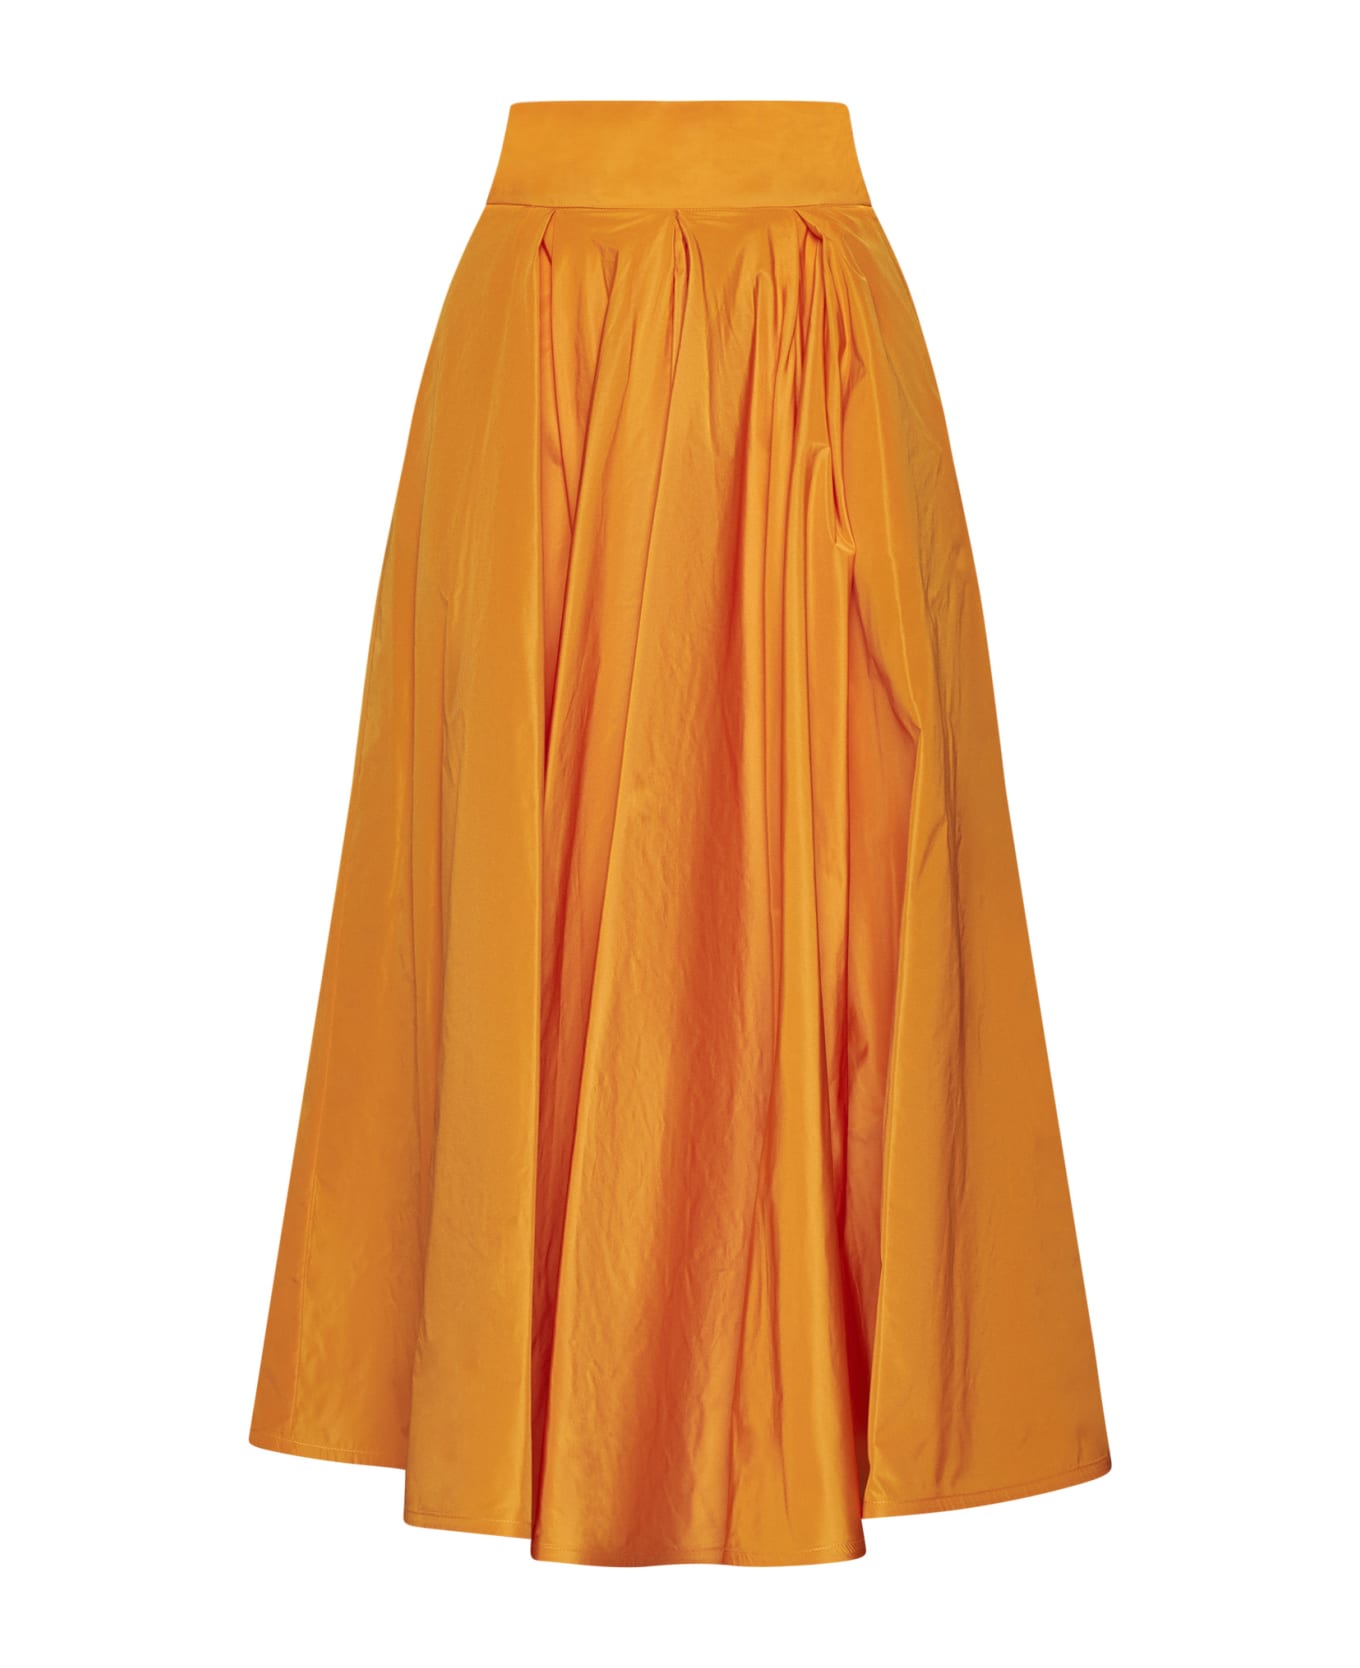 Sara Roka Skirt - Orange